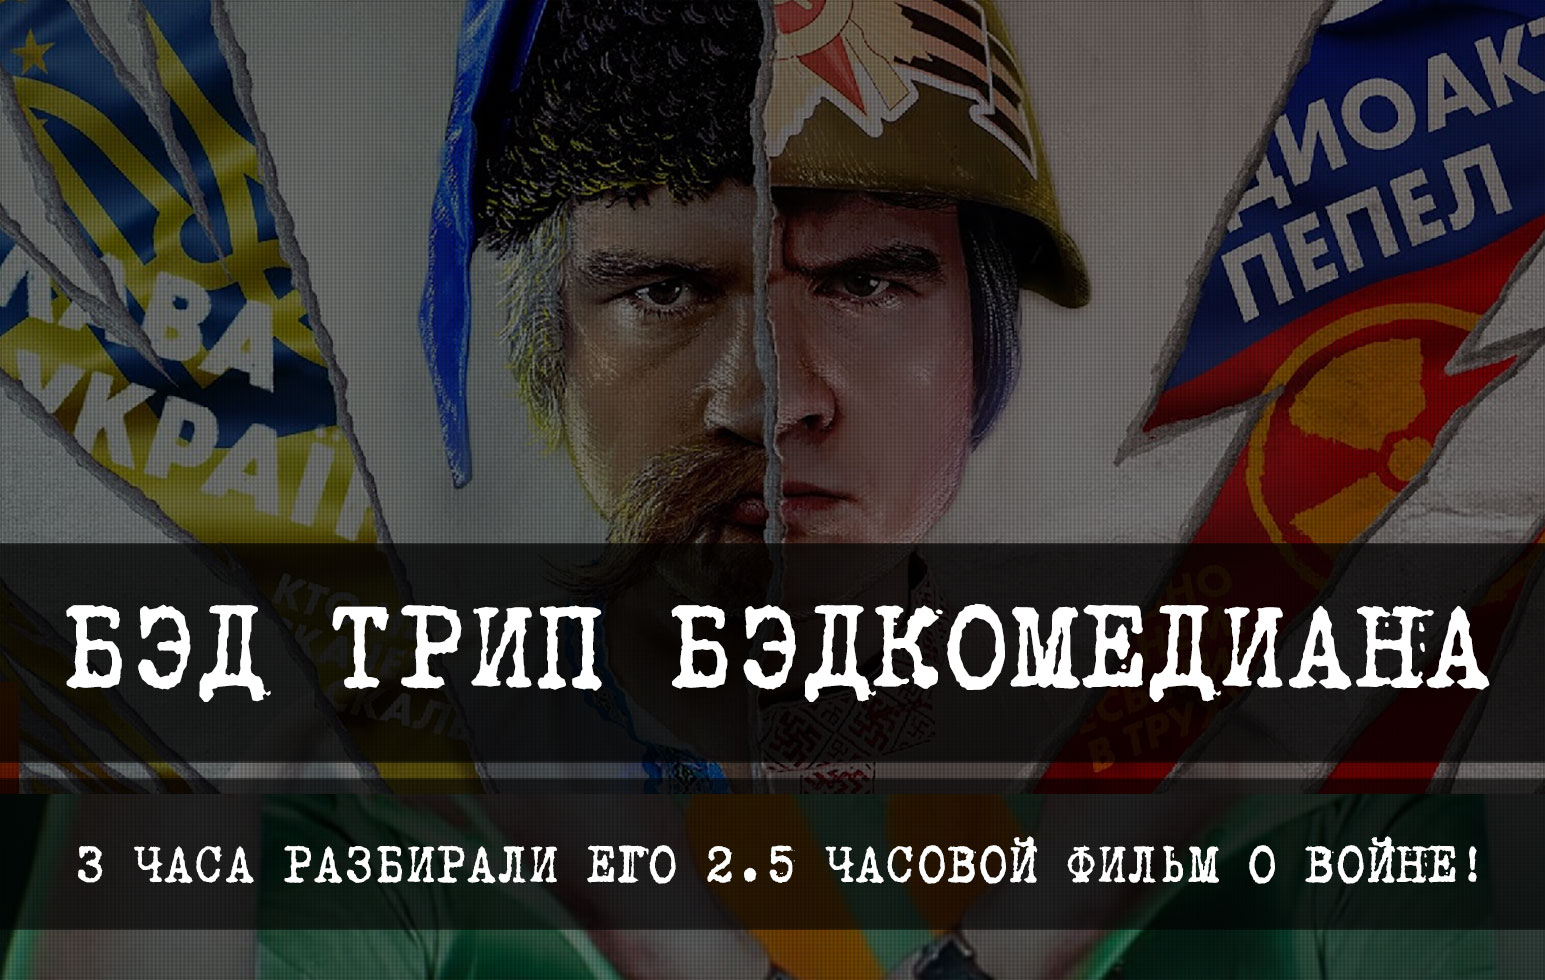 Трехчасовой разбор фильма Бэдкомедиана «Российская vs. Украинская пропаганда в кино»